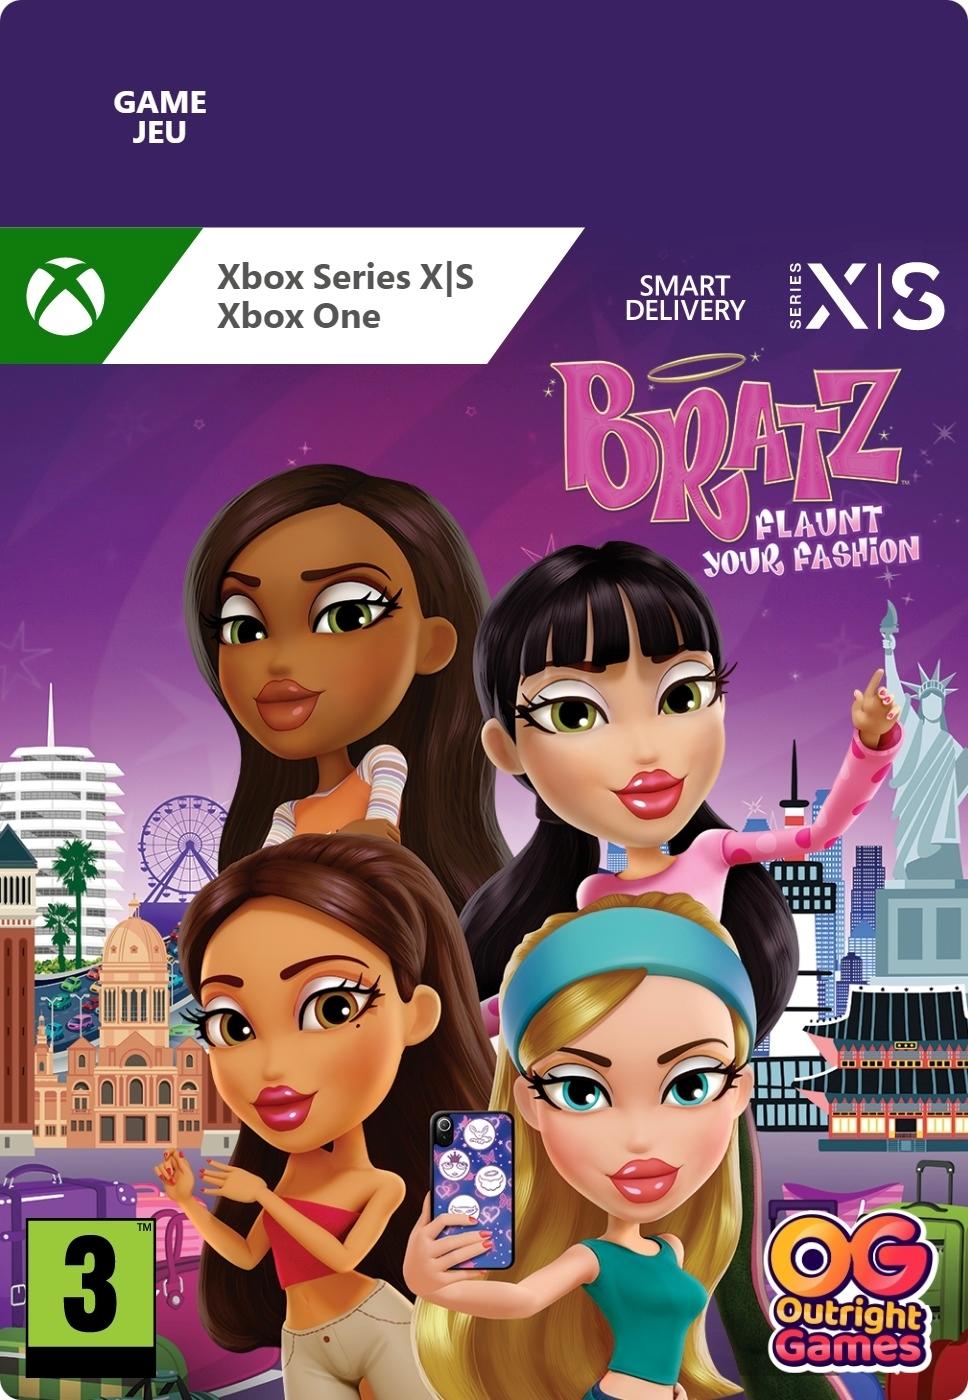 Bratz: Flaunt your fashion - Xbox Series X/Xbox One - Game | G3Q-01440 (771a3a88-dbe6-434e-a531-db5a5d1f2bee)